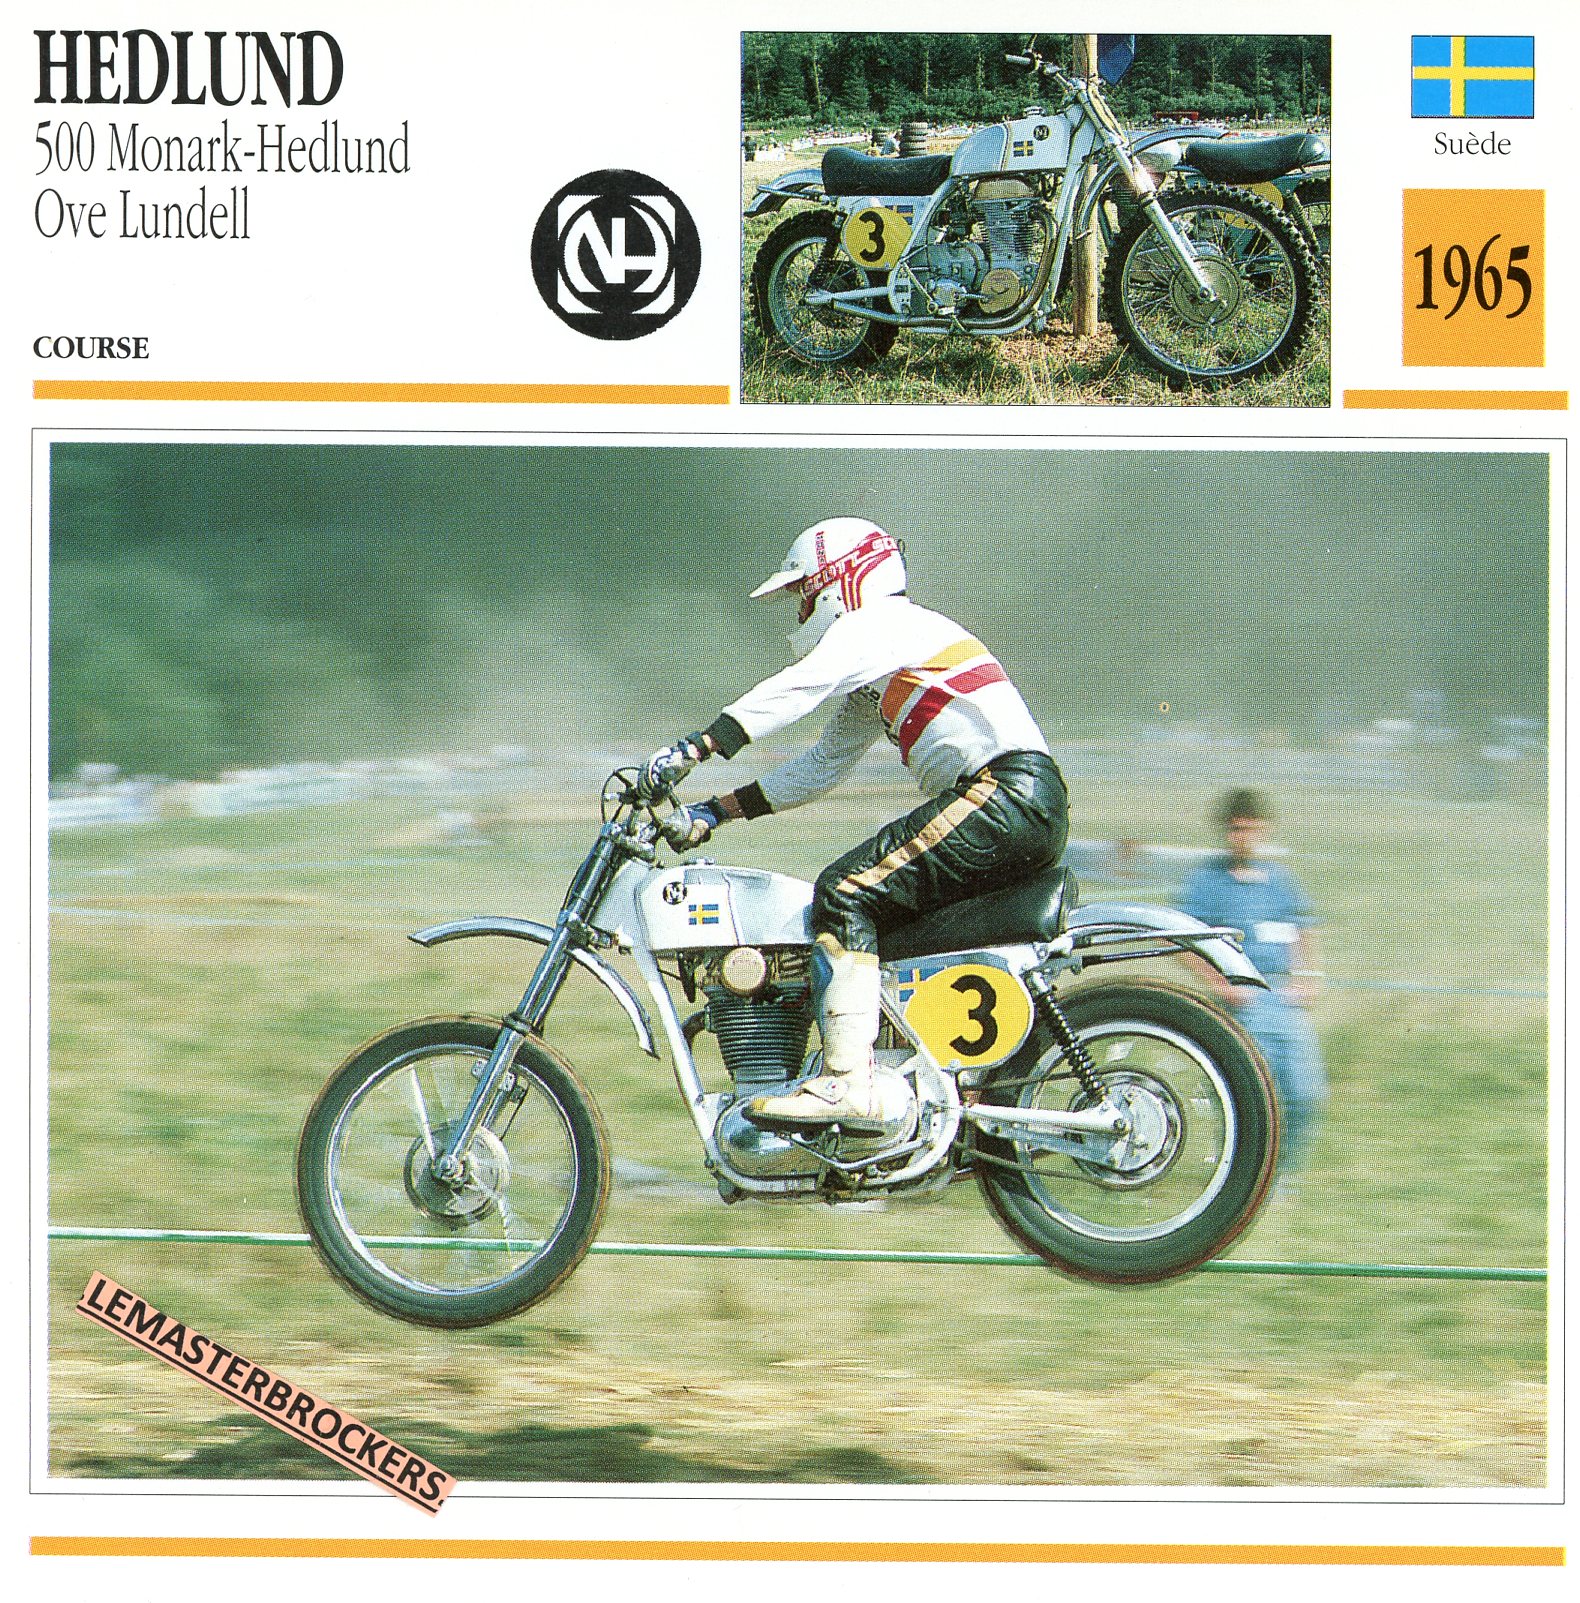 HEDLUND-500-MONARK-HEDLUND-OVE-LUNDELL-1965-FICHE-MOTO-LEMASTERBROCKERS